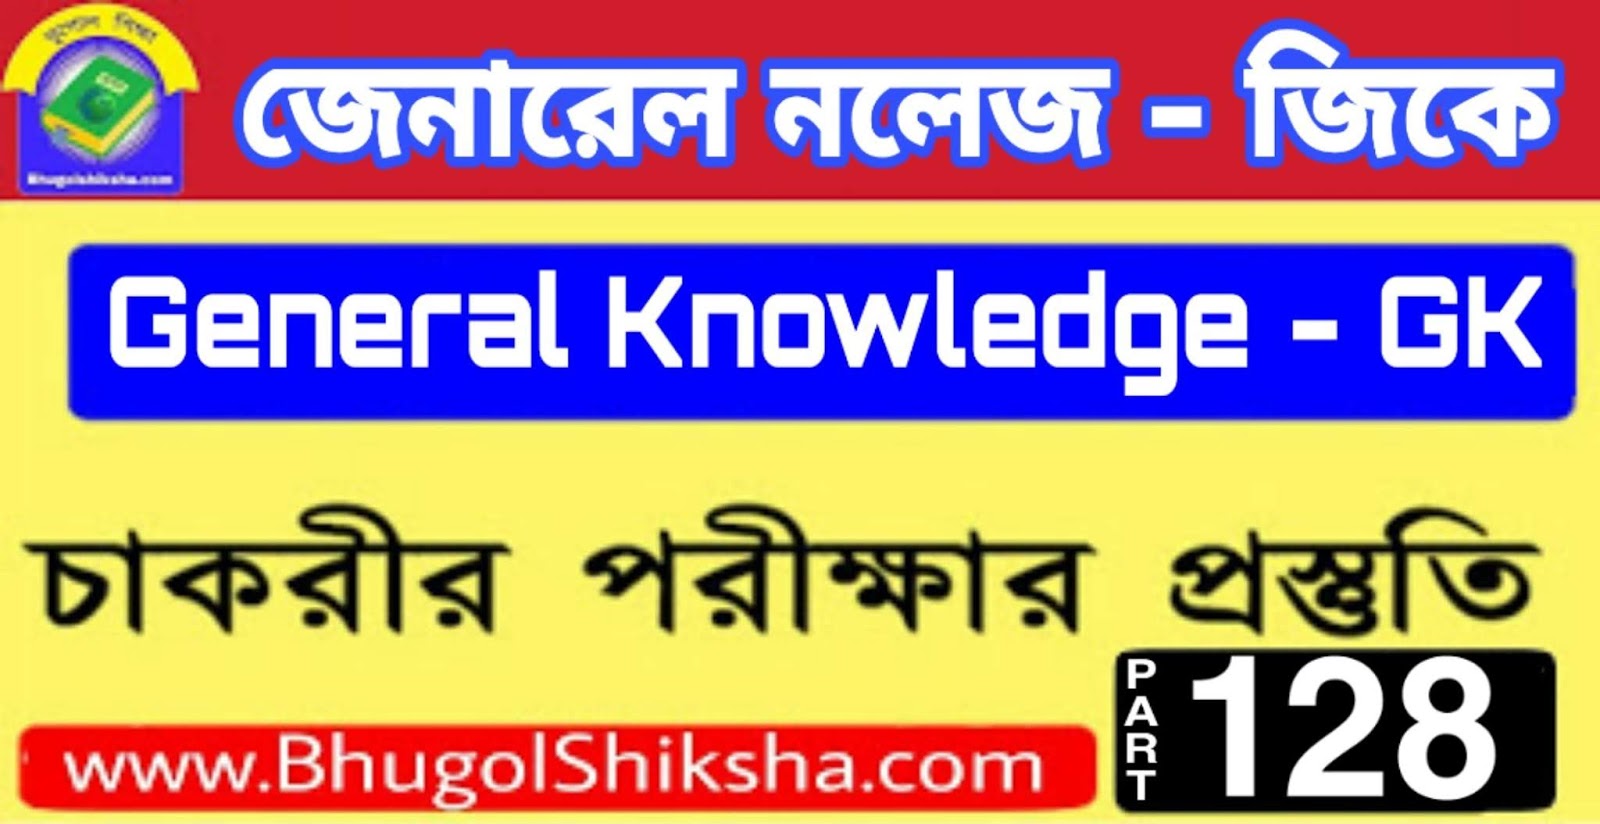 ভারতের ভূগোল - Indian Geography | জেনারেল নলেজ জিকে প্রশ্ন ও উত্তর | General Knowledge GK MCQ in Bengali | Part - 128